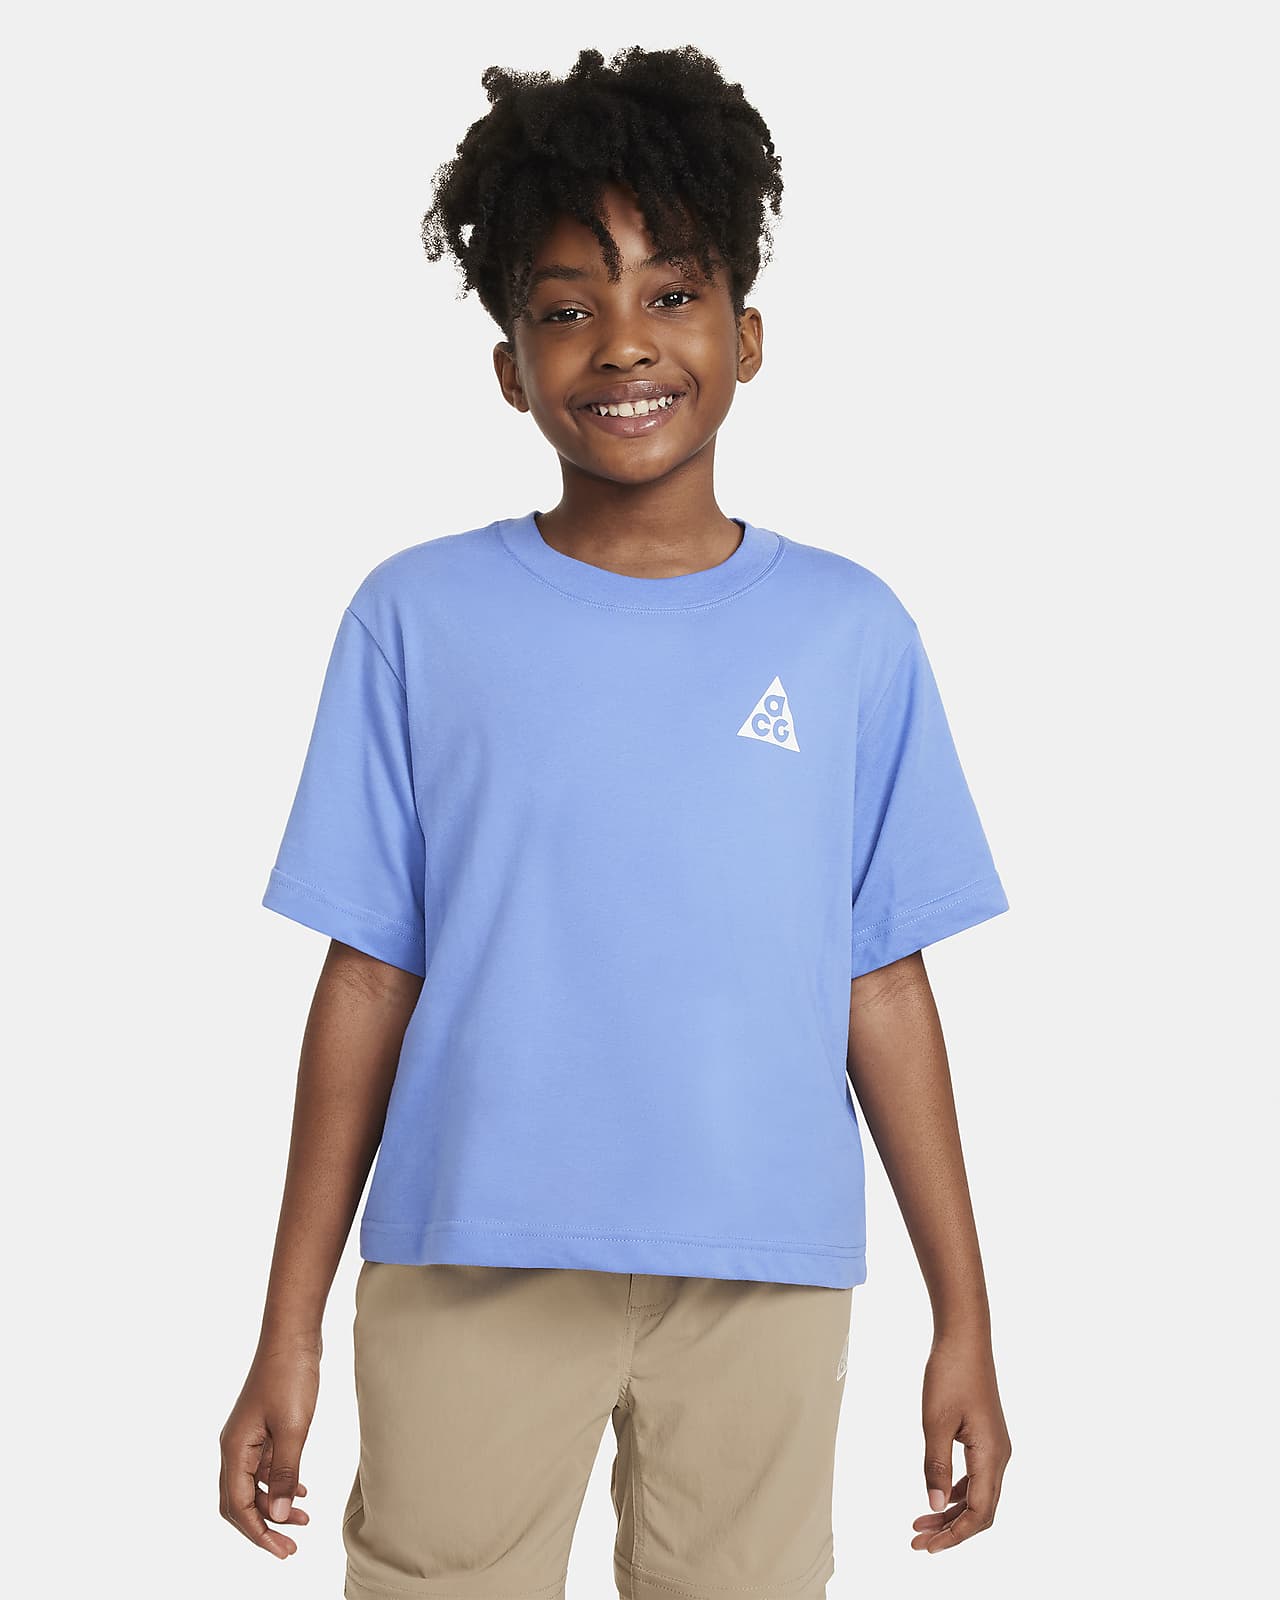 Tričko Nike ACG pro větší děti (dívky)